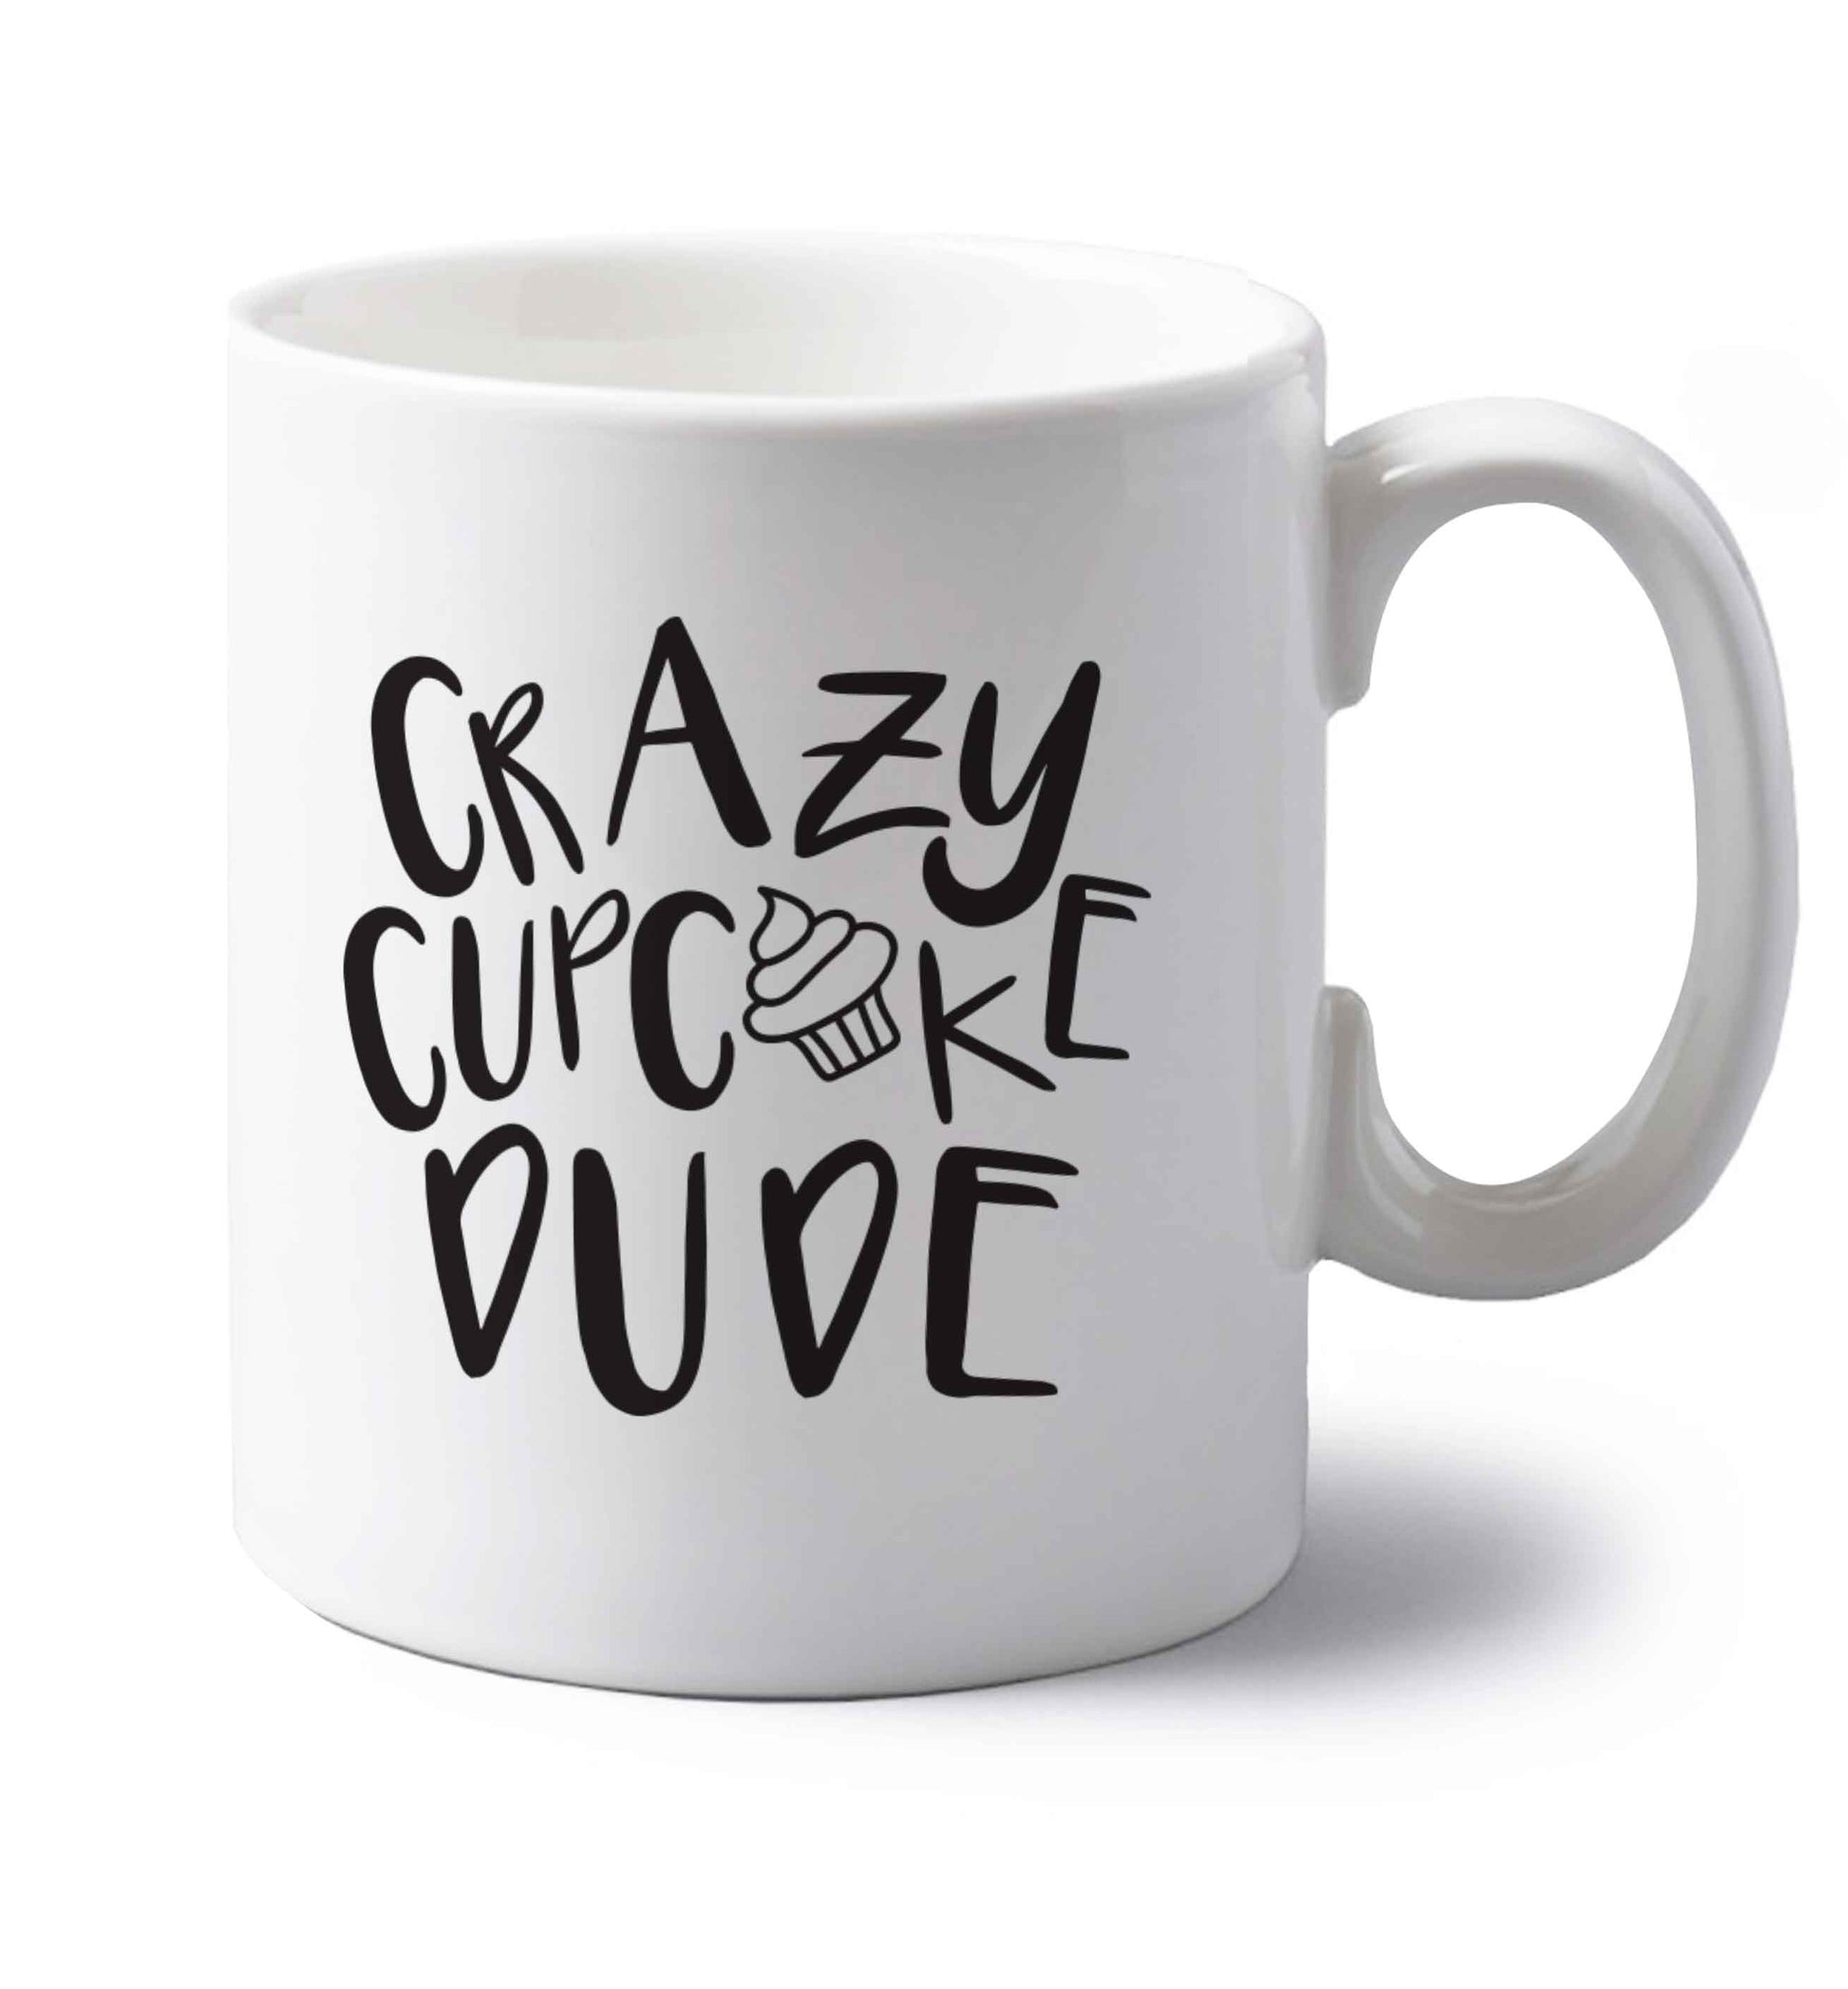 Crazy cupcake dude left handed white ceramic mug 